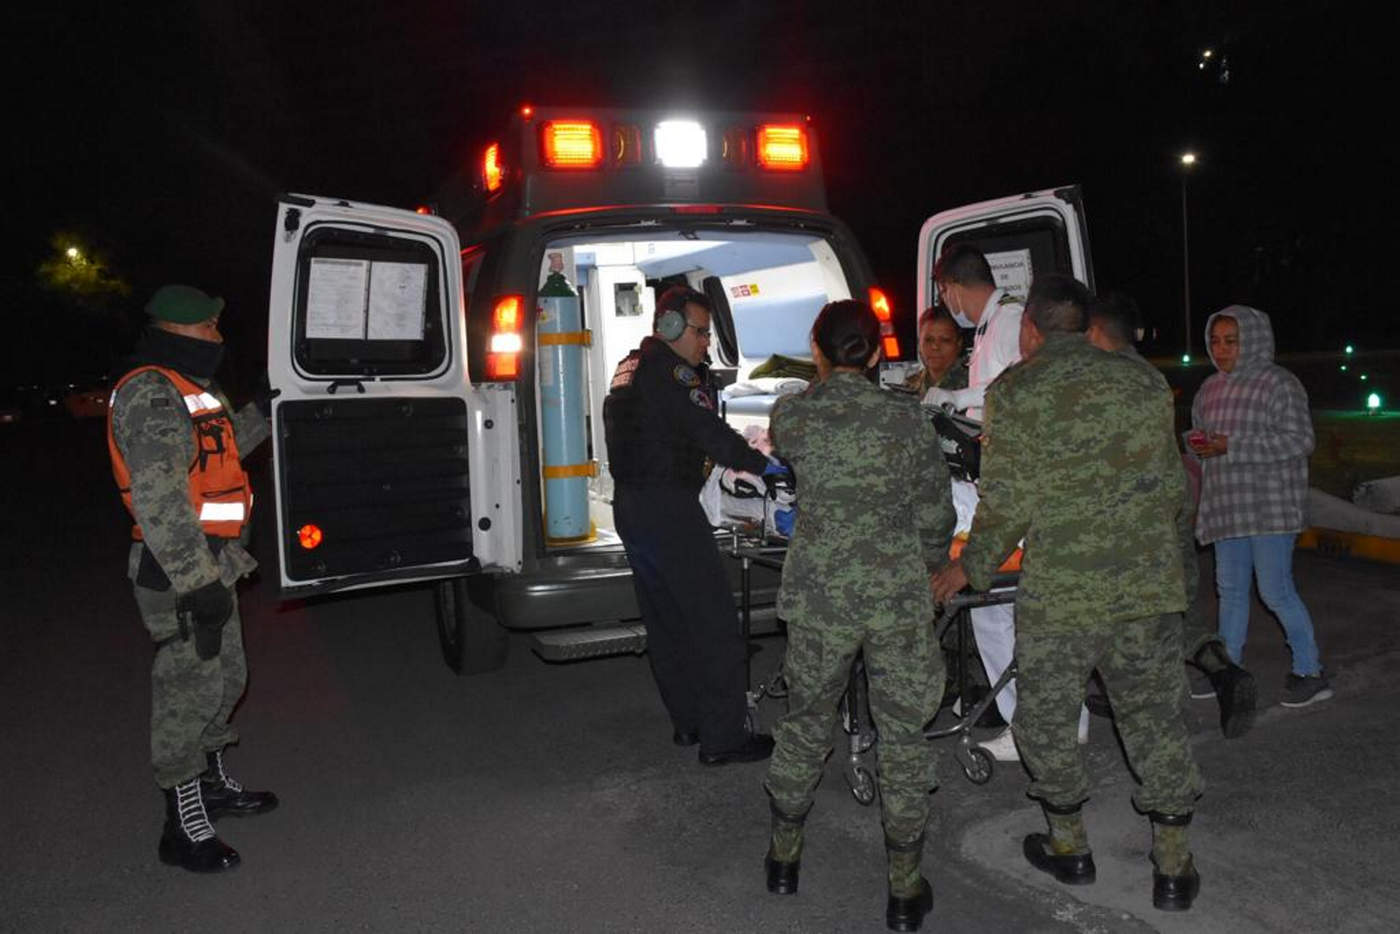 Un total de 51 personas siguen hospitalizadas en México, algunas de ellas en estado muy crítico, tras la explosión en una toma clandestina de gasolina, una tragedia que ya suma 89 muertos. (ARCHIVO)